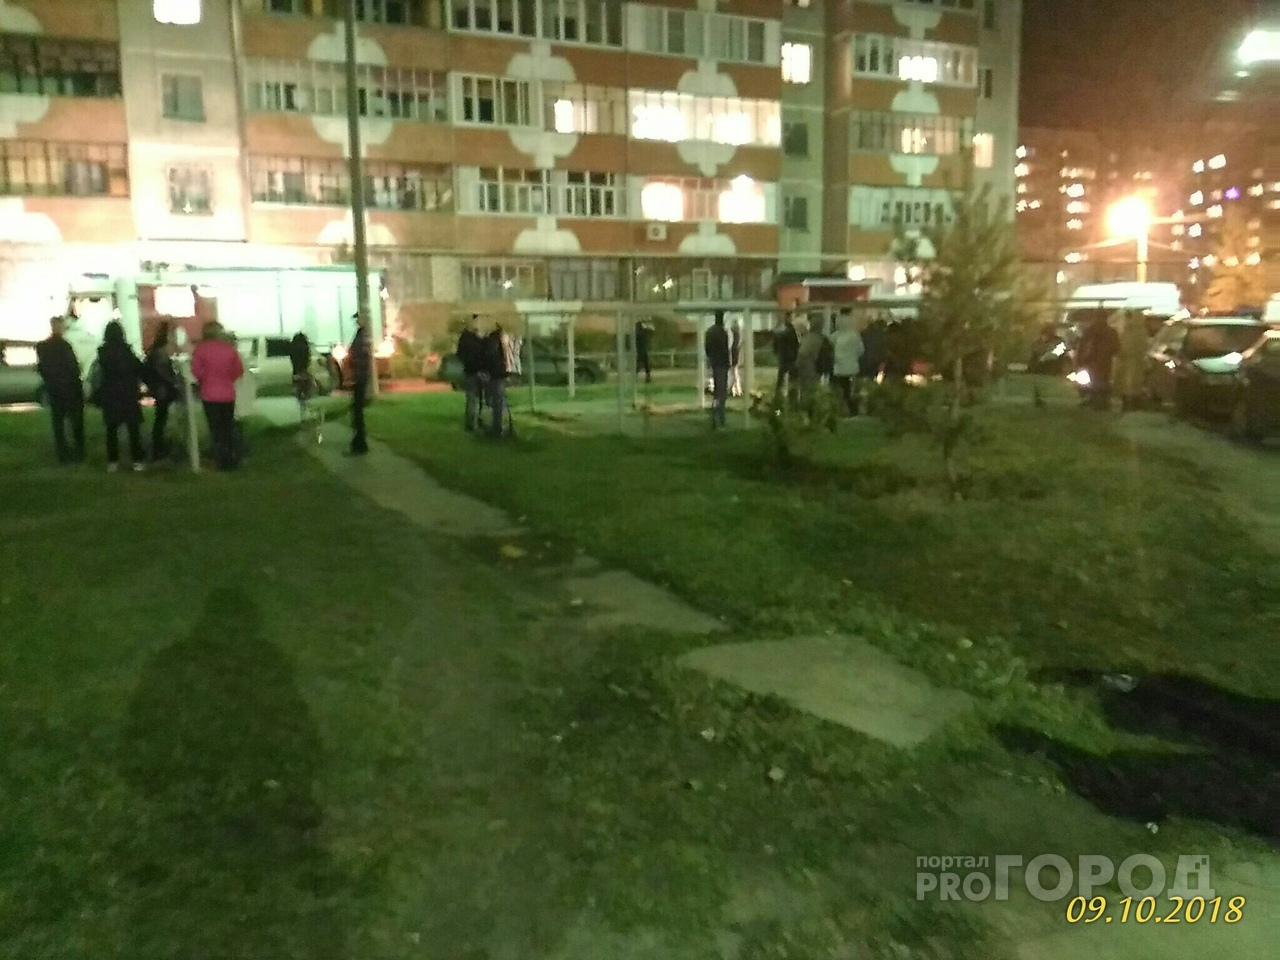 В Йошкар-Оле из-за угрозы взрыва эвакуировали жителей подъезда (ВИДЕО)